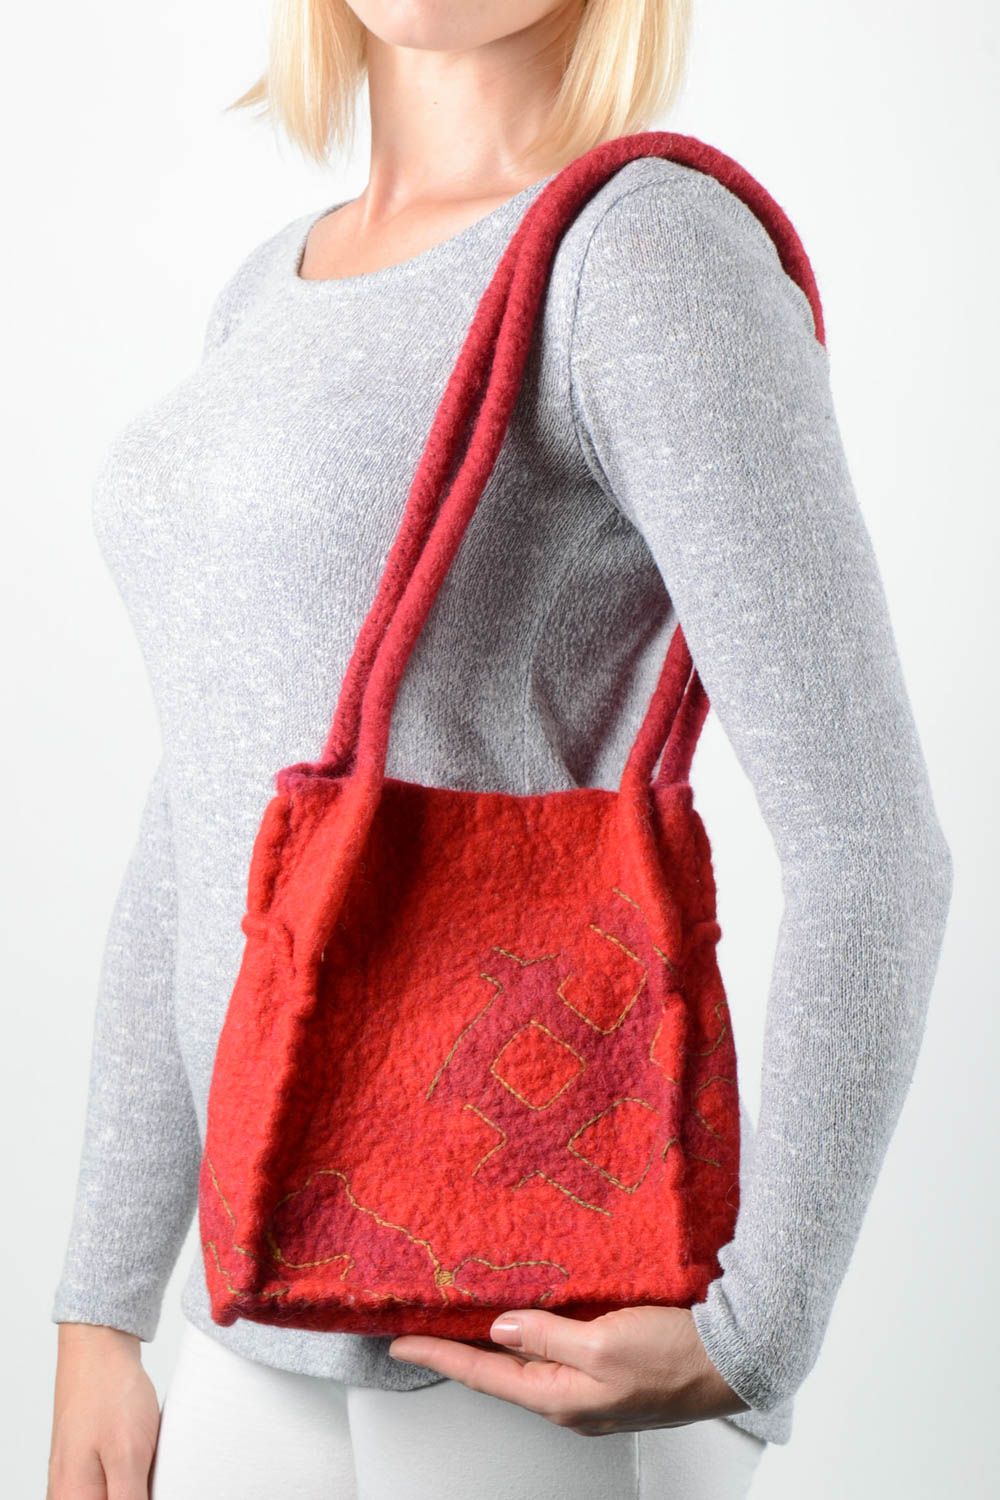 Sac à main rouge Sac en laine fait main Cadeau original Accessoire femme photo 1